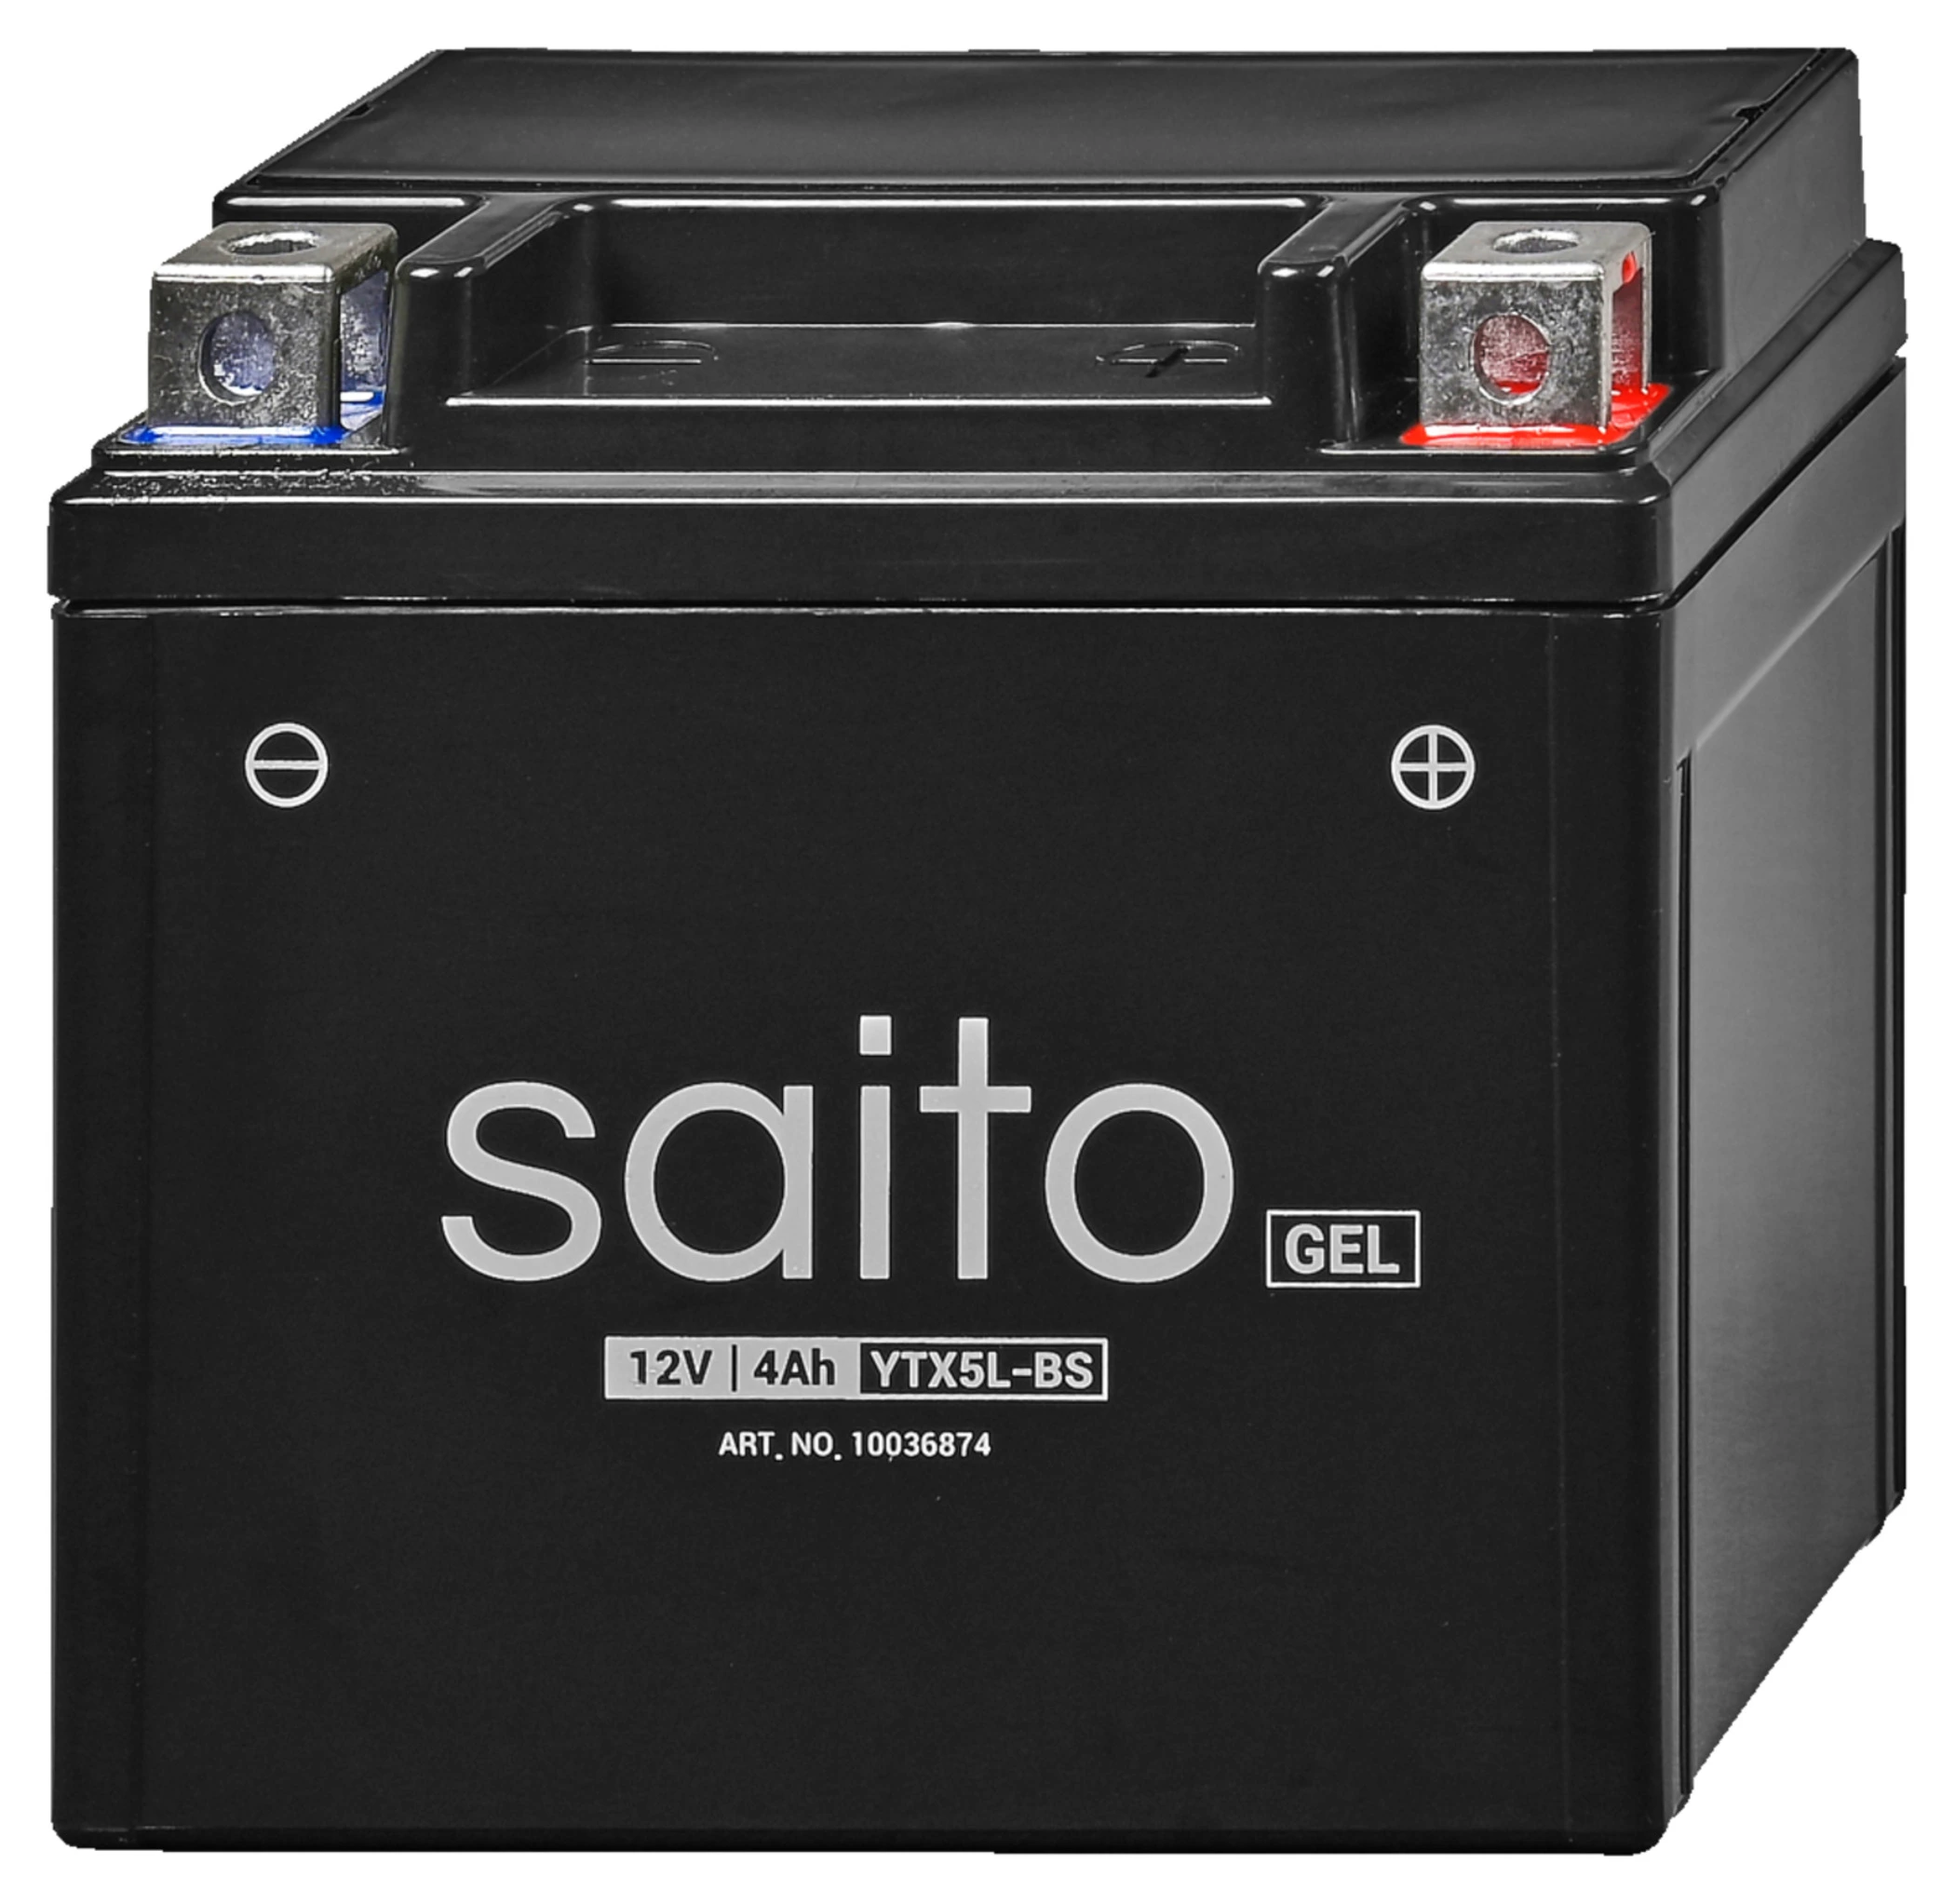 Saito saito Gel-Batterie günstig